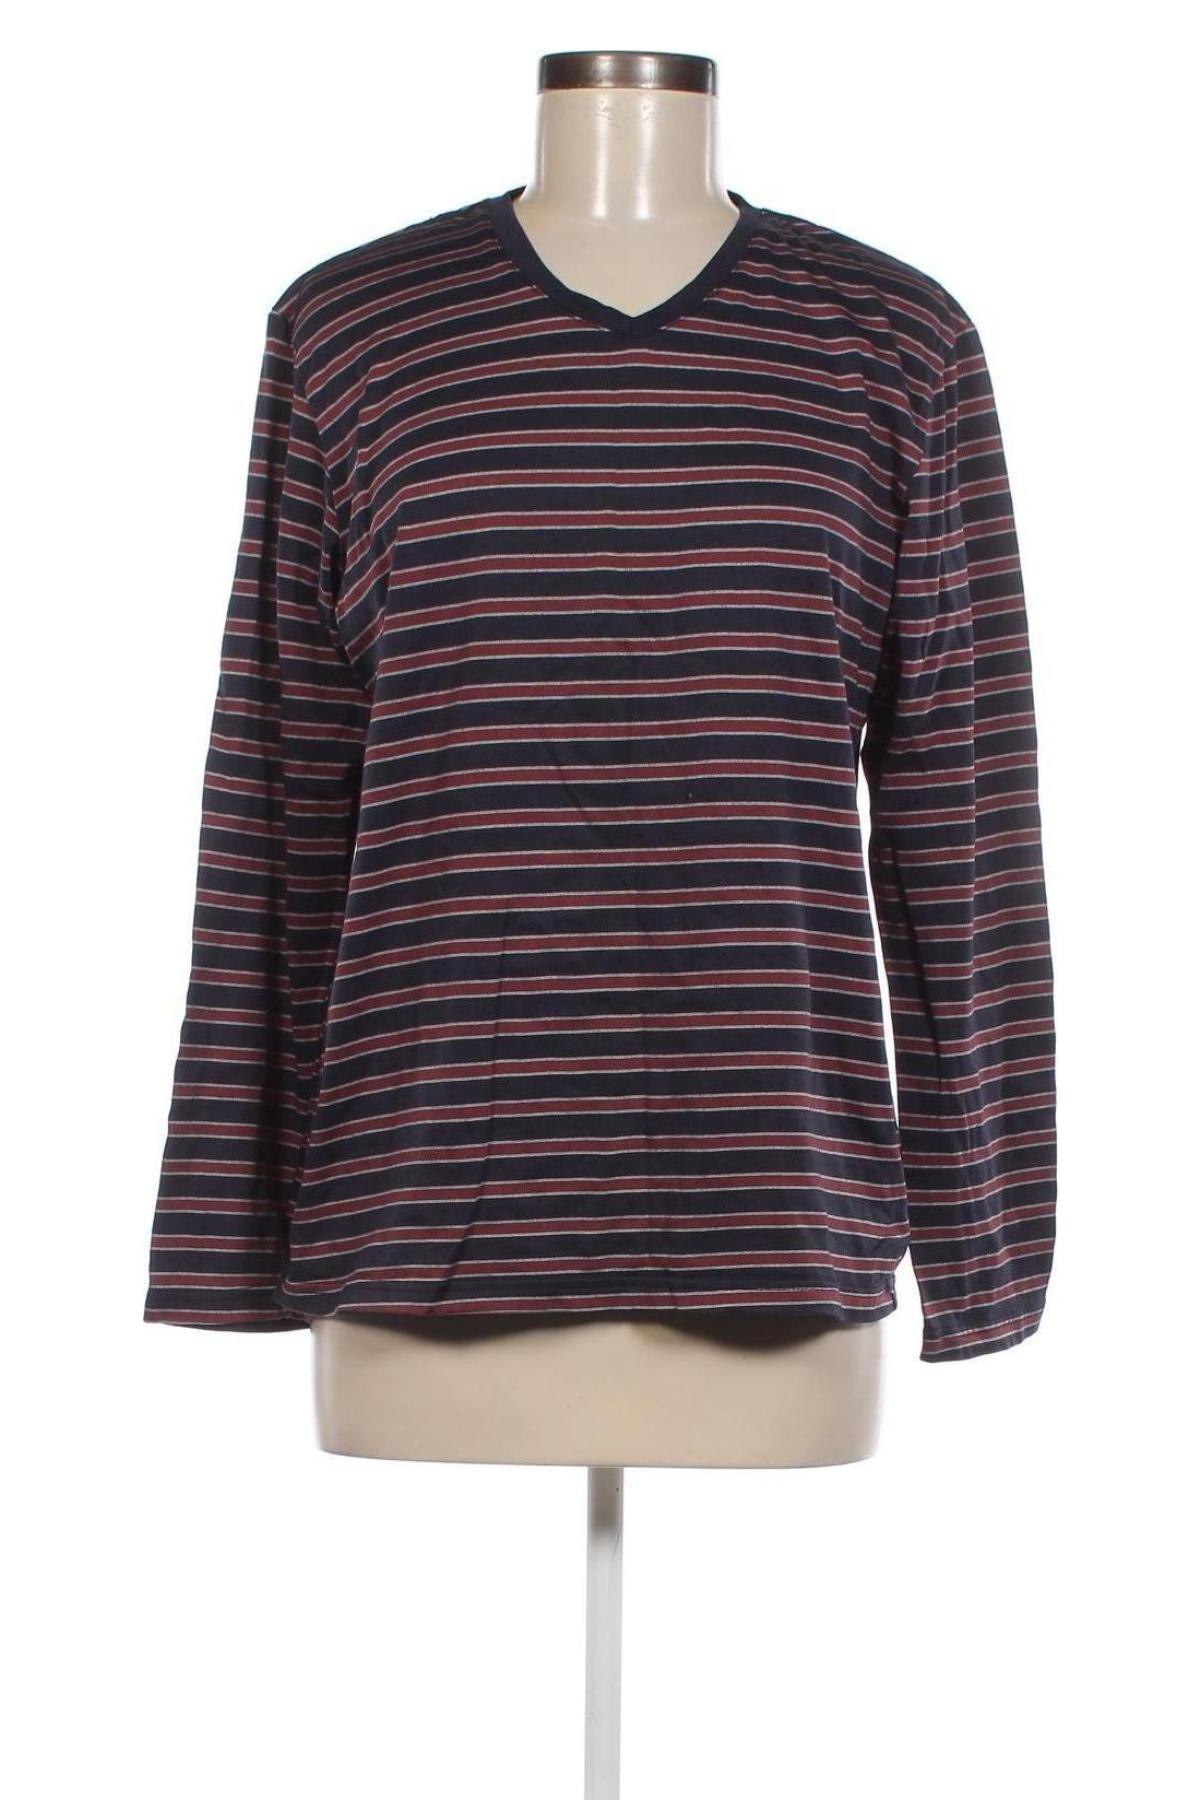 Γυναικεία μπλούζα Watson's, Μέγεθος XXL, Χρώμα Μπλέ, Τιμή 8,46 €